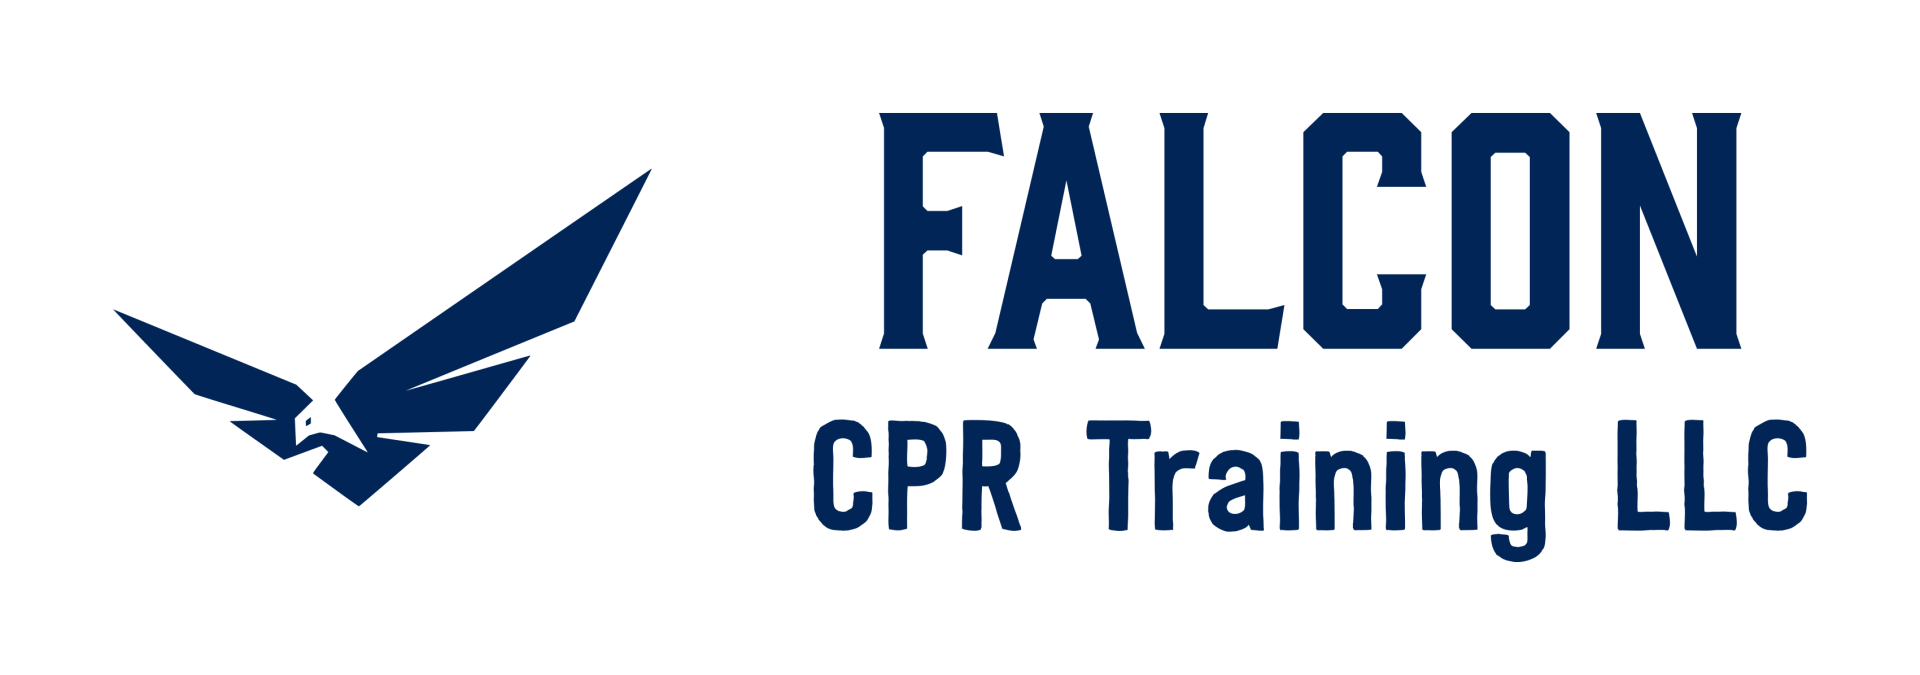 Falcon CPR Training